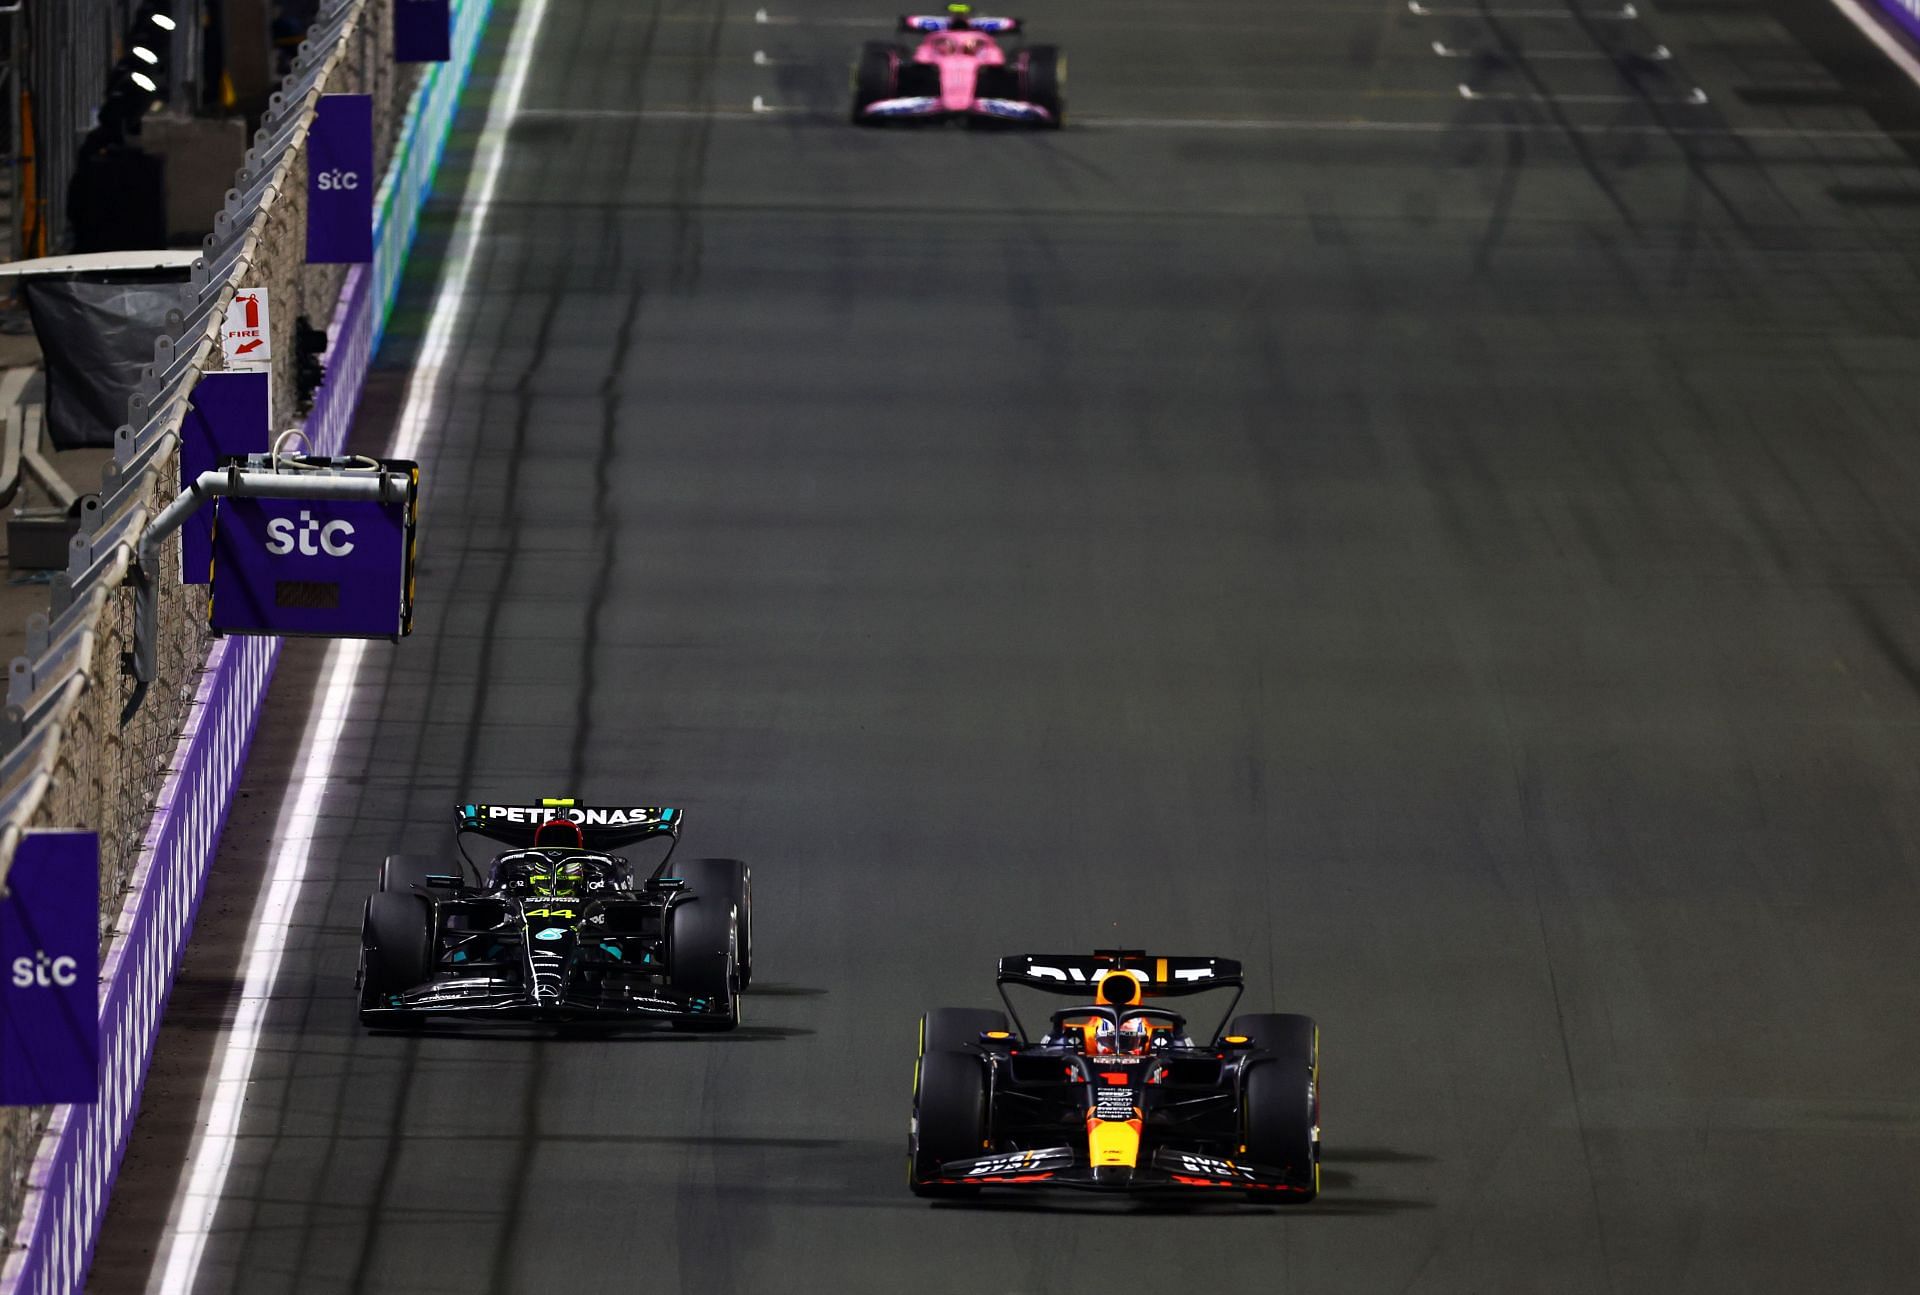 Max Verstappen at the F1 Grand Prix in Saudi Arabia [in the car in front]